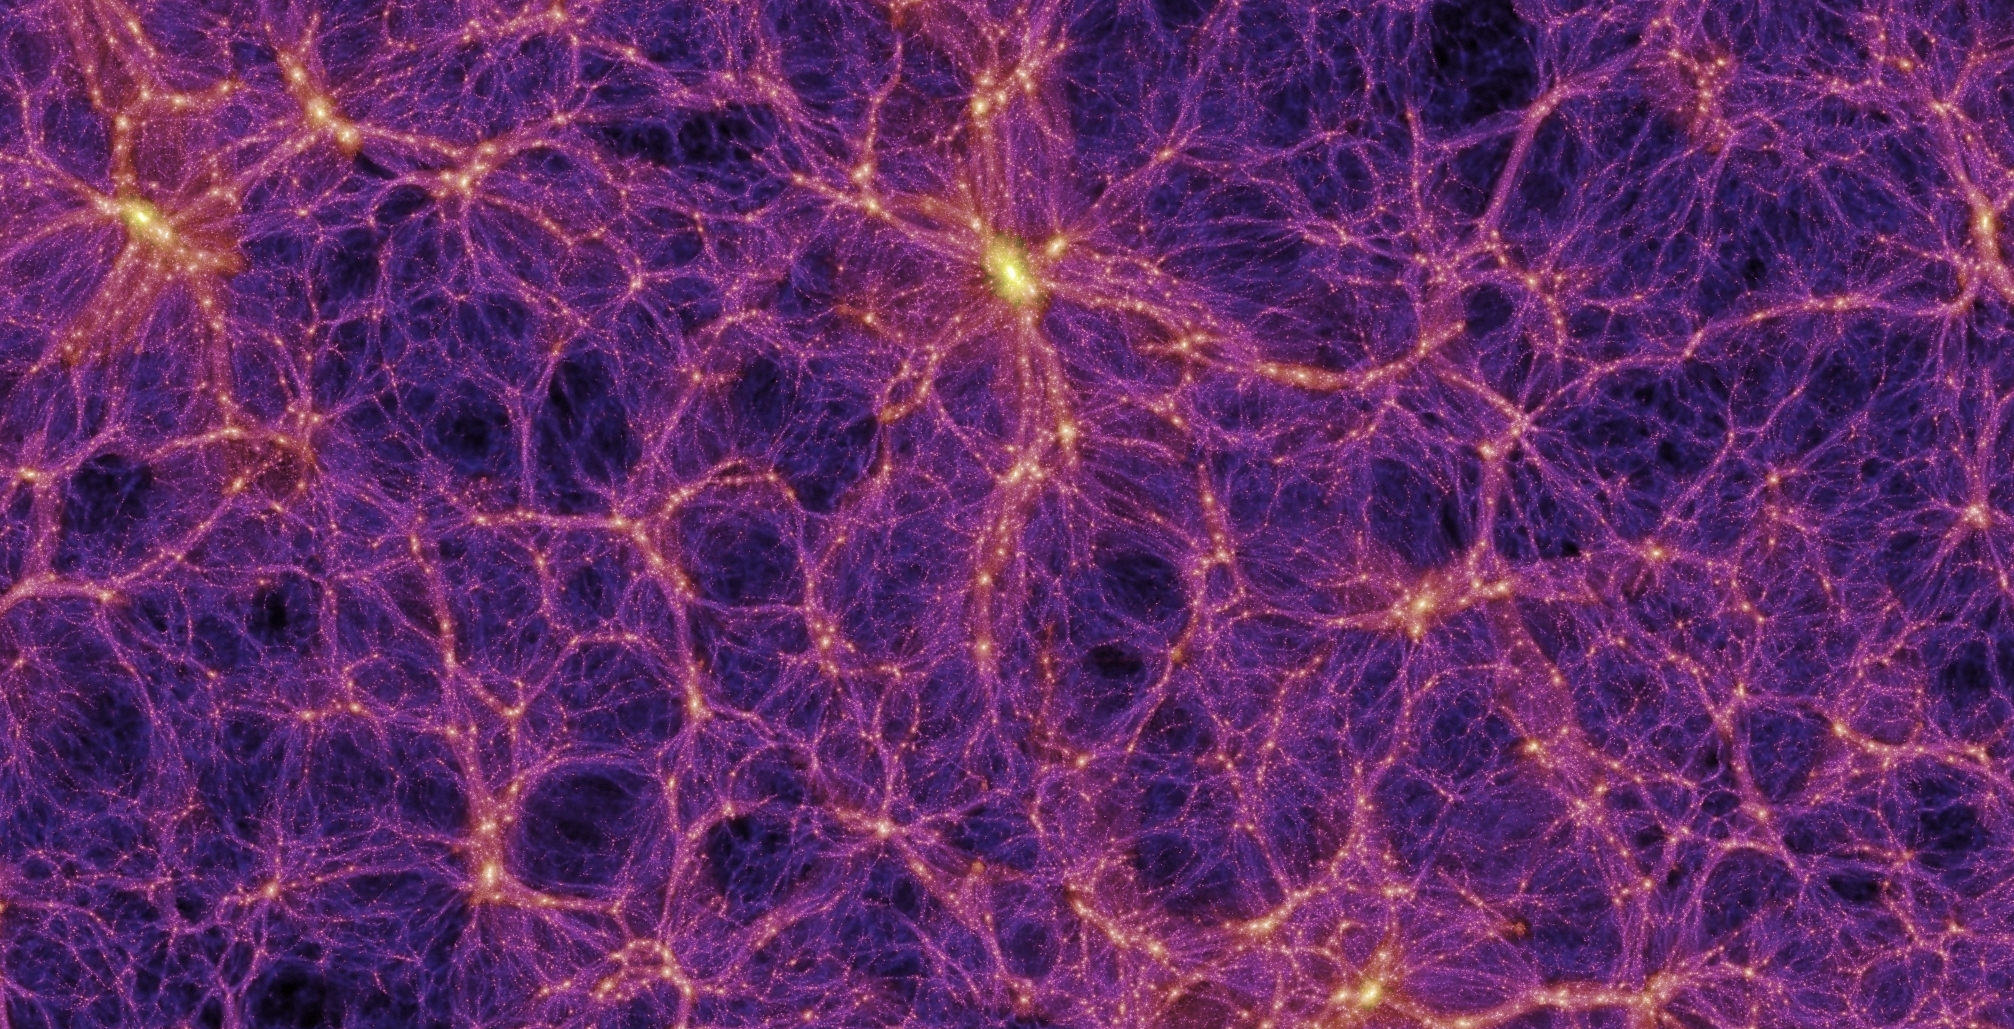 Les simulations numériques de la formation des grandes structures de l’Univers permettraient de comprendre comment la matière noire pourrait avoir donné les premiers trous noirs supermassifs. Ici, une image extraite d'une de ces simulations réalisées avec des superordinateurs dans le cadre du Millennium Simulation Project — l'objectif de ce dernier est d'en savoir plus sur la manière dont les galaxies et les amas de galaxies se forment et se rassemblent pour créer, à grande échelle, des structures en forme de filaments. L'image est suffisamment précise pour comprendre bien des aspects de l'univers observable en utilisant la théorie de Newton de la gravitation. © Max Planck Institute for Astrophysics, Springel et al.